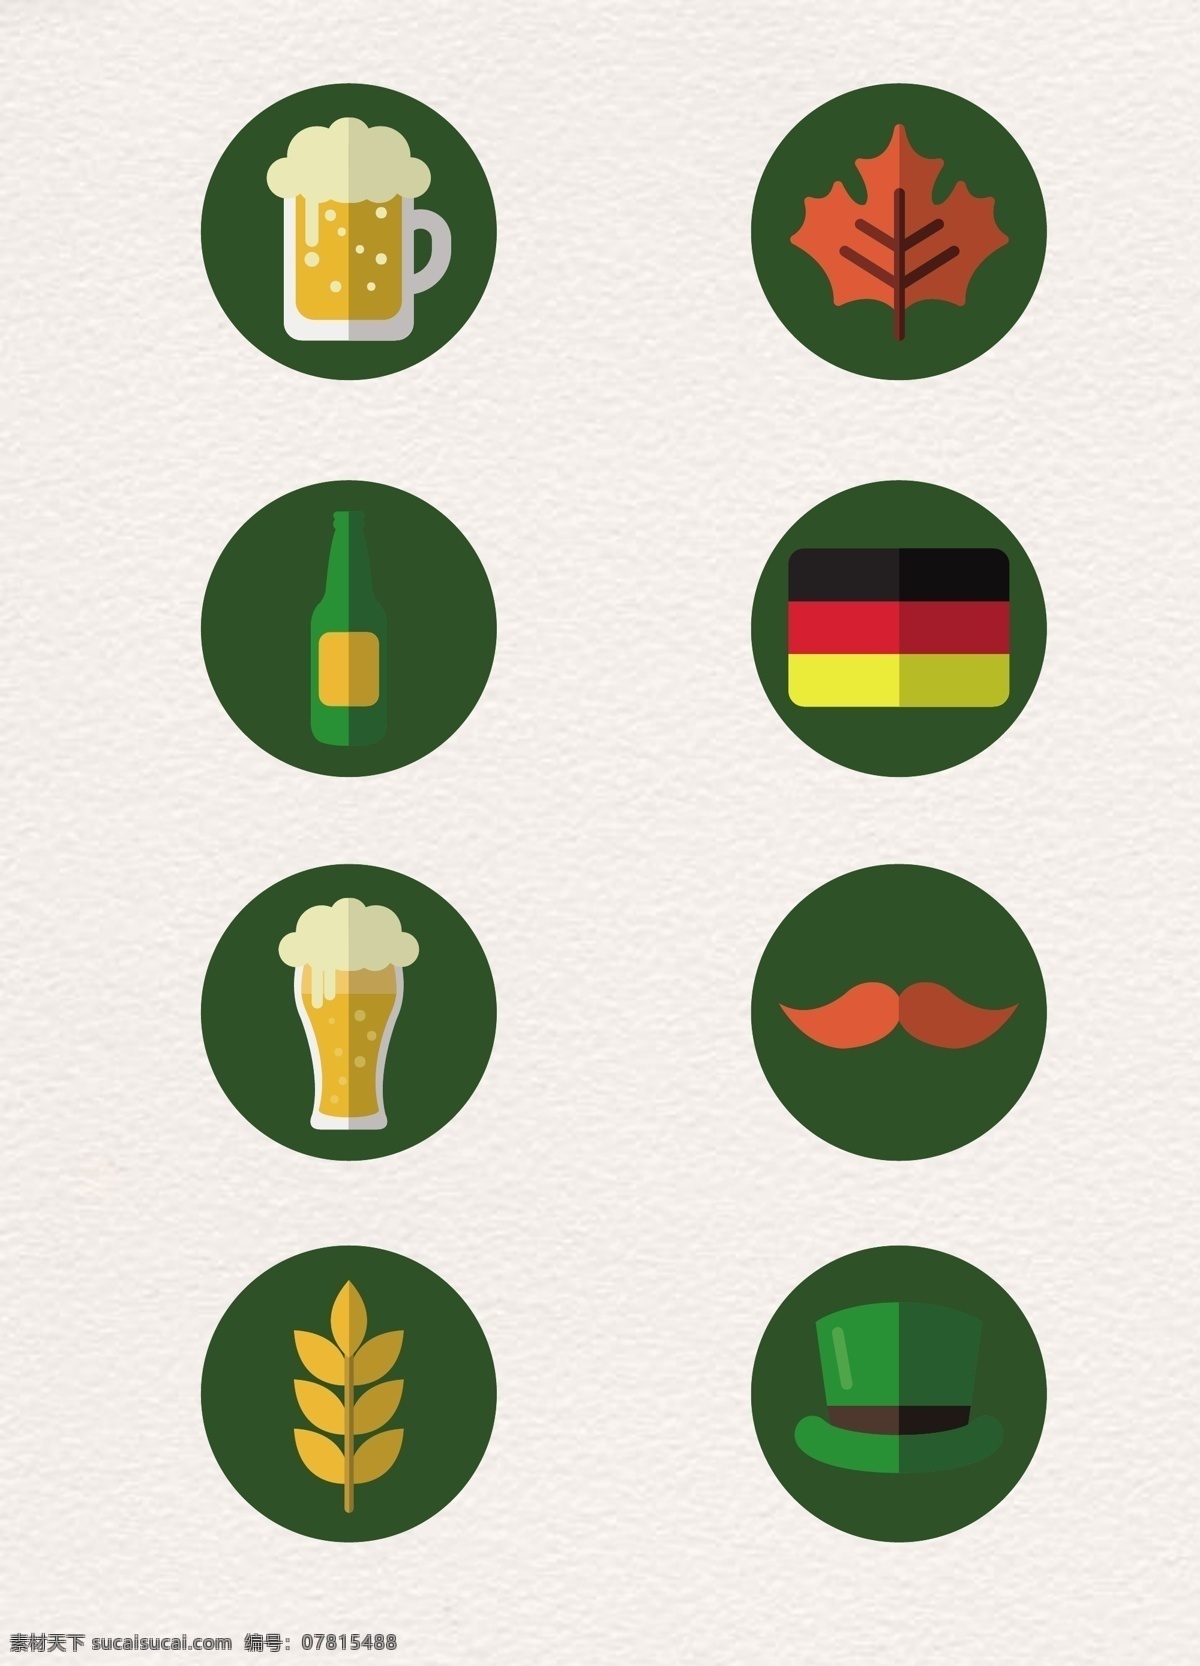 圆形 啤酒节 元素 图标 矢量图 啤酒 枫叶 帽子 德国国旗 橡木桶 大麦 胡子